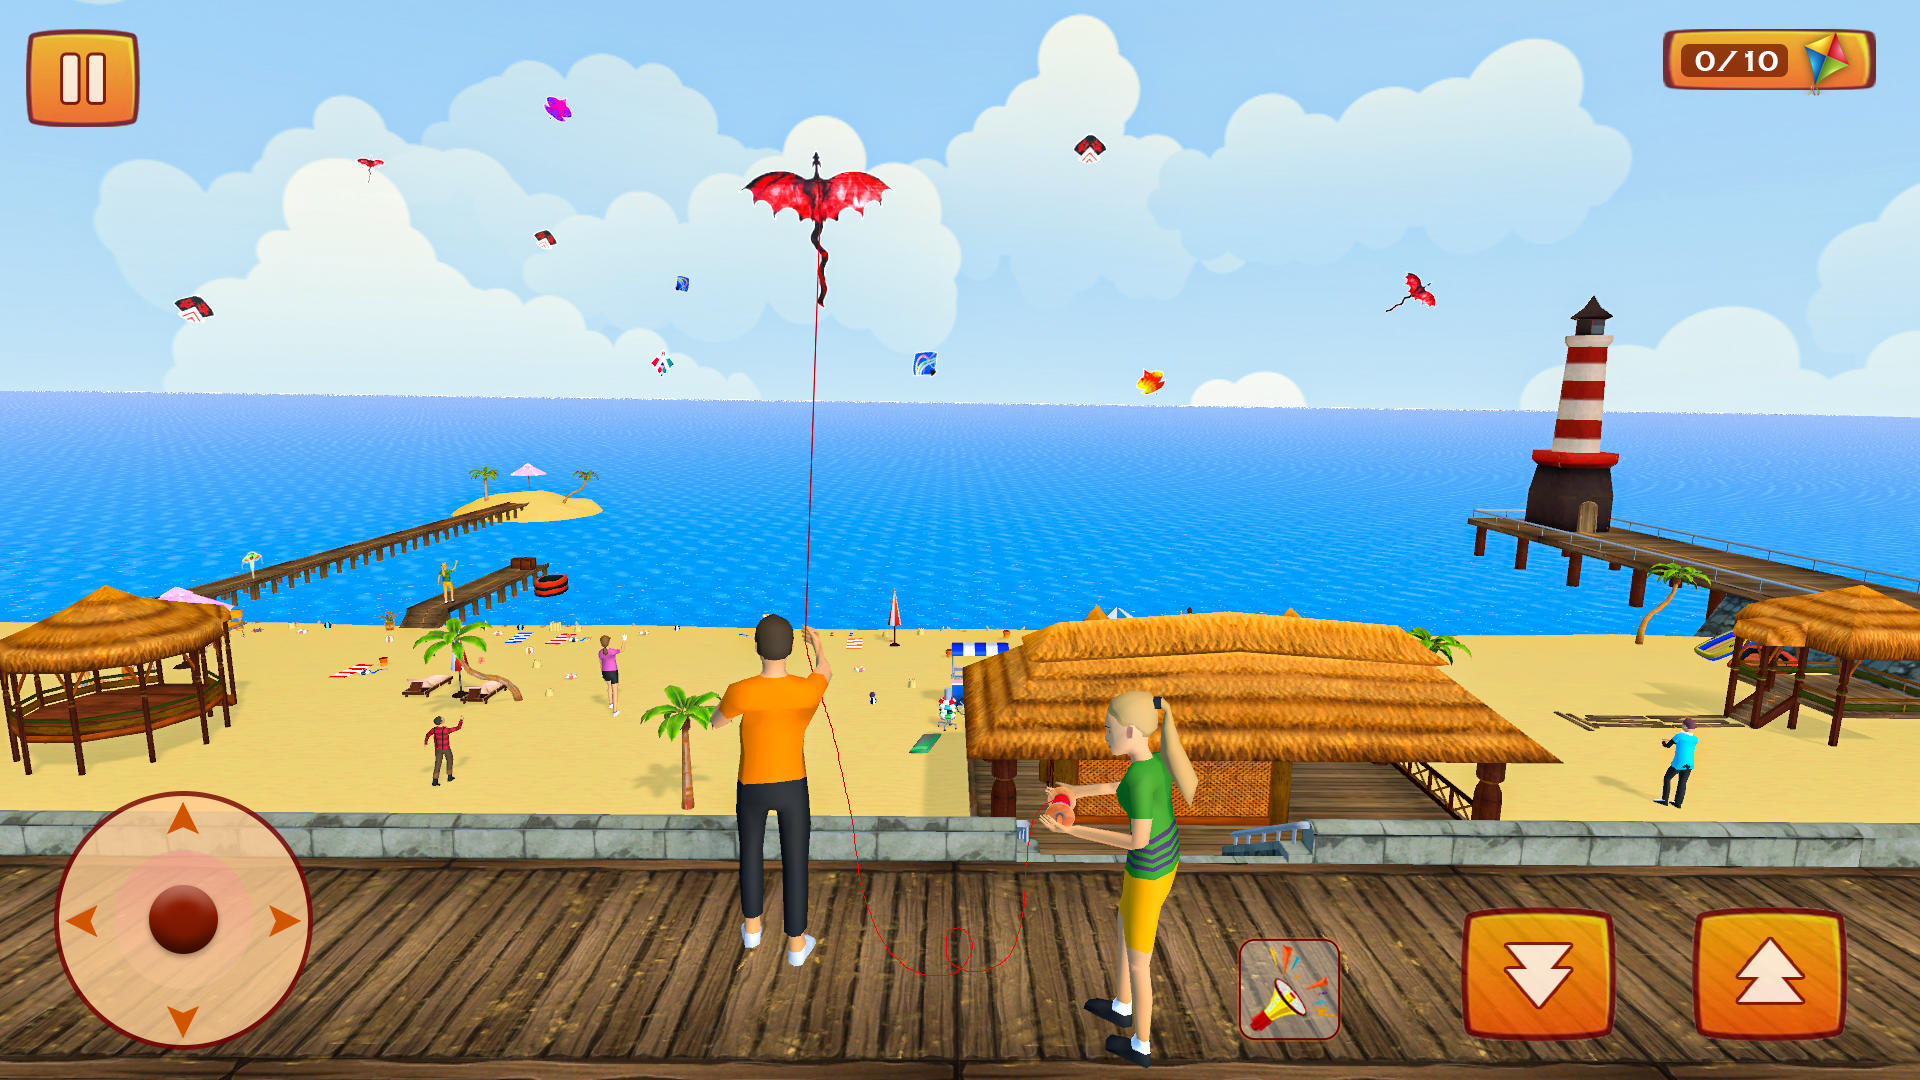 Screenshot 1 of Kite Game: Kite Flying Game 3D 2.9